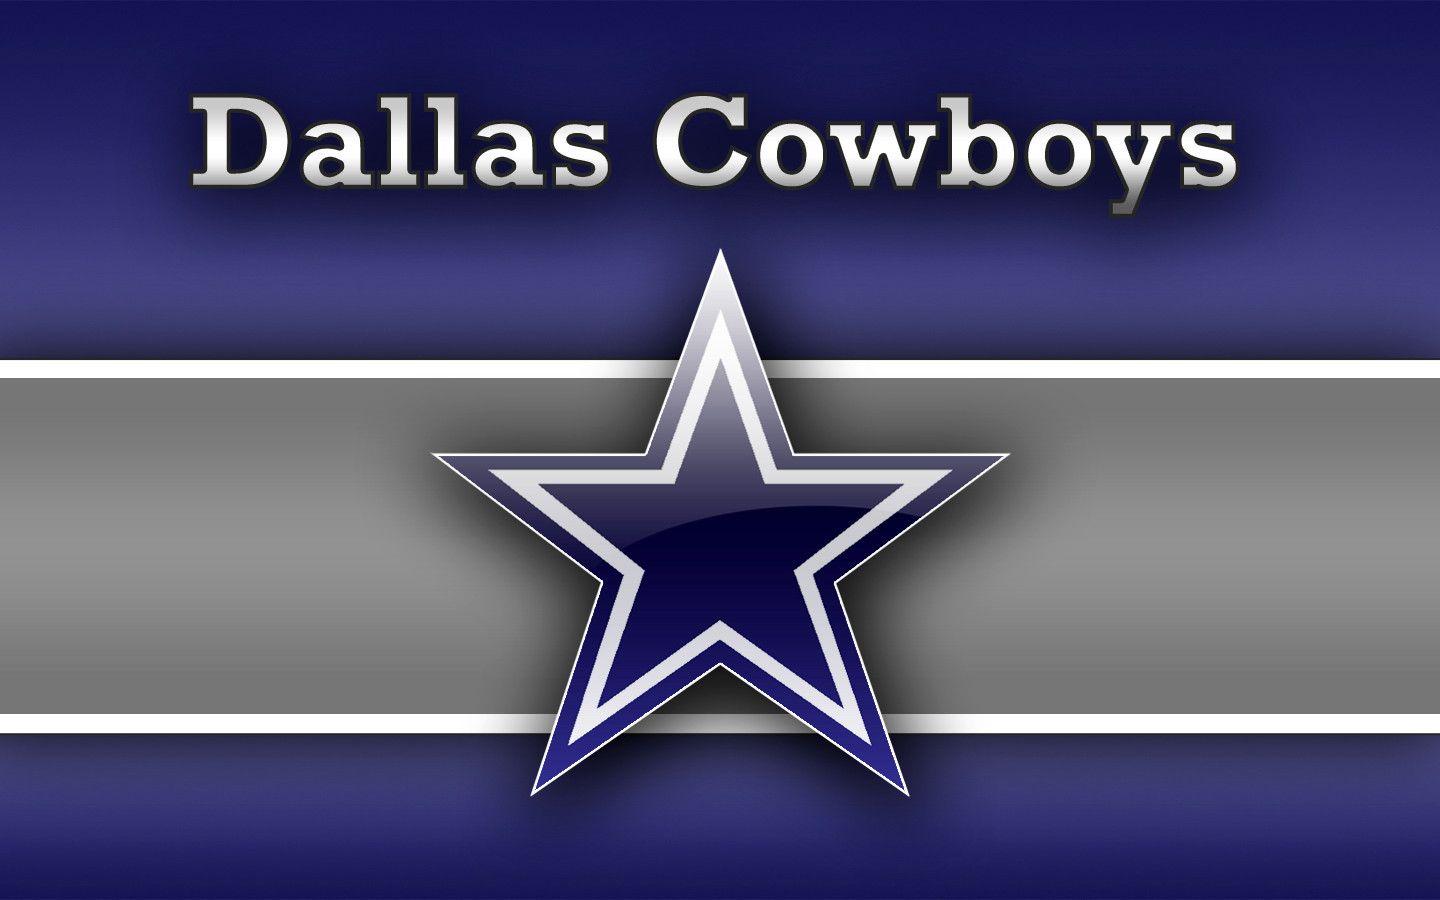 Dallas Cowboys Computer Wallpaper 57 images